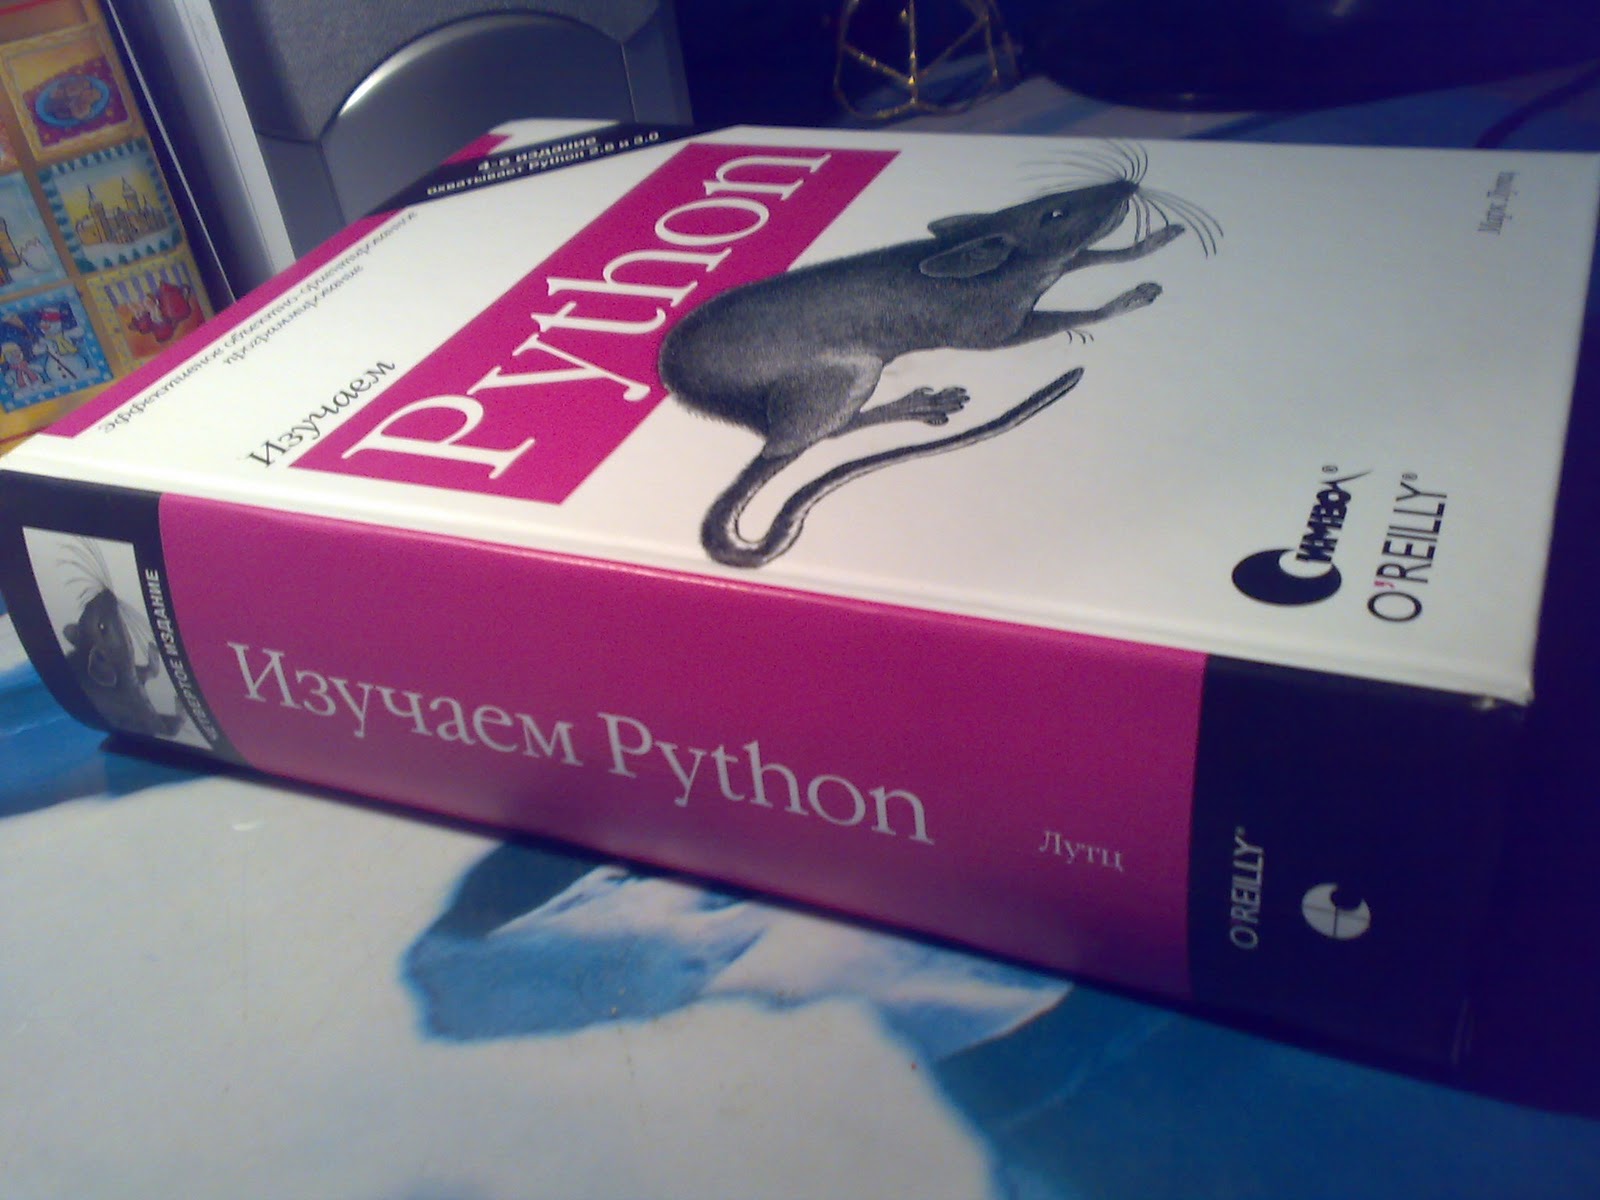 Python купить книгу. Лутц м. "изучаем Python том 1".